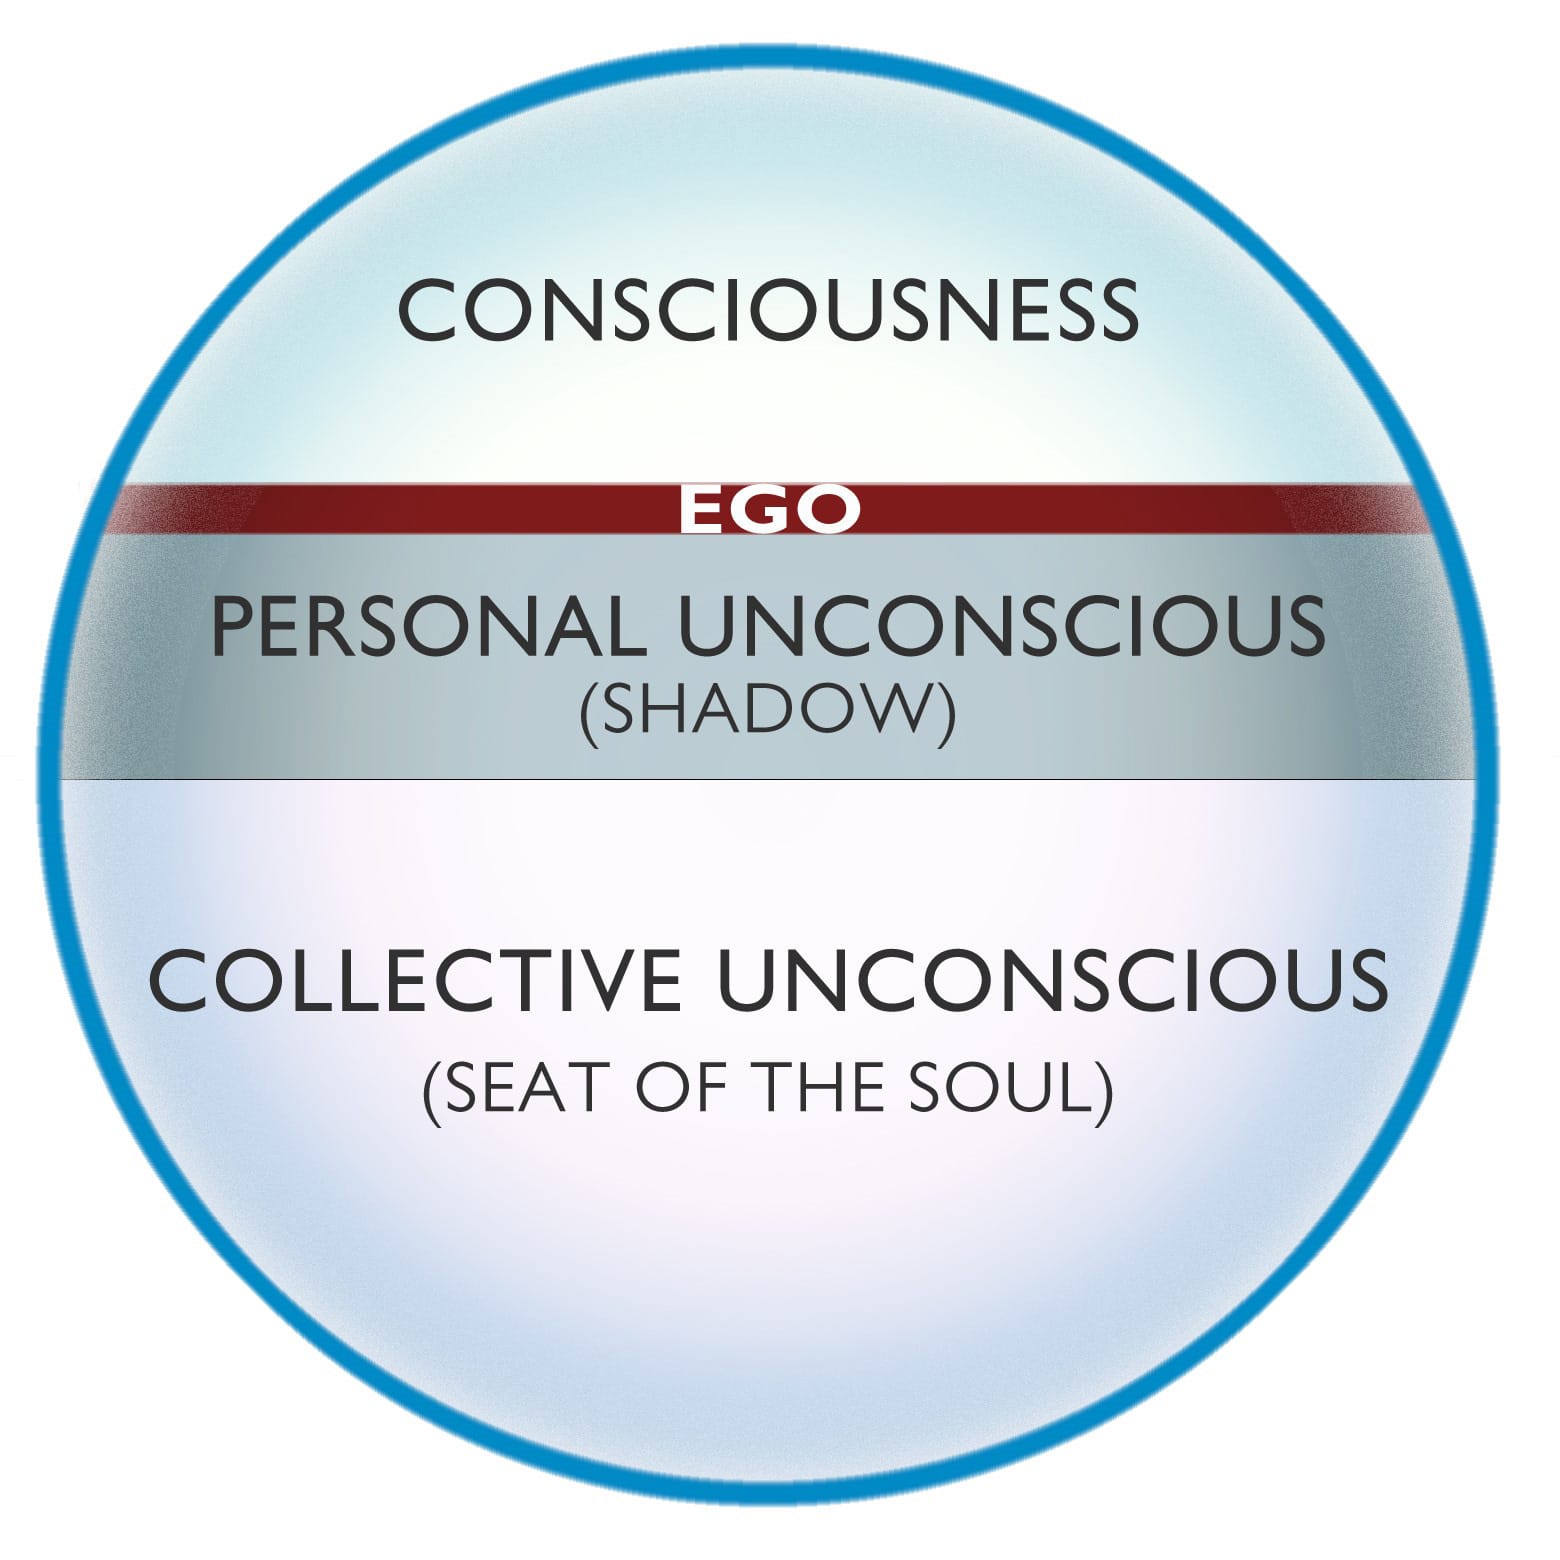 Ego Diagram